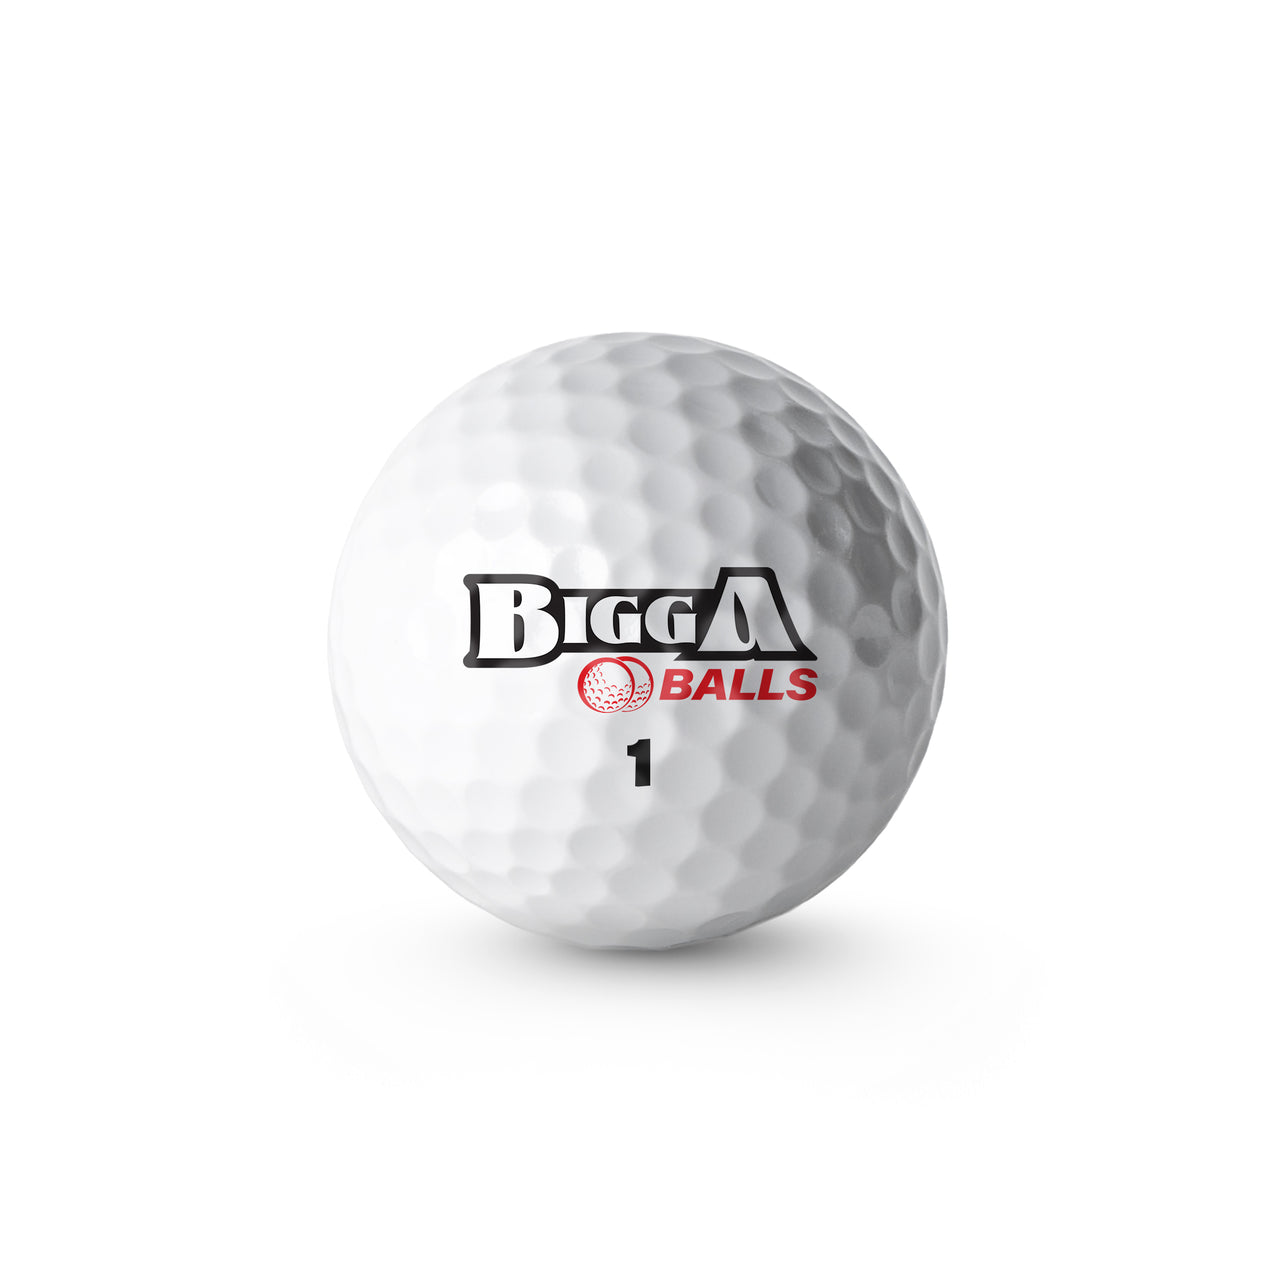 bigga balls white golf ball